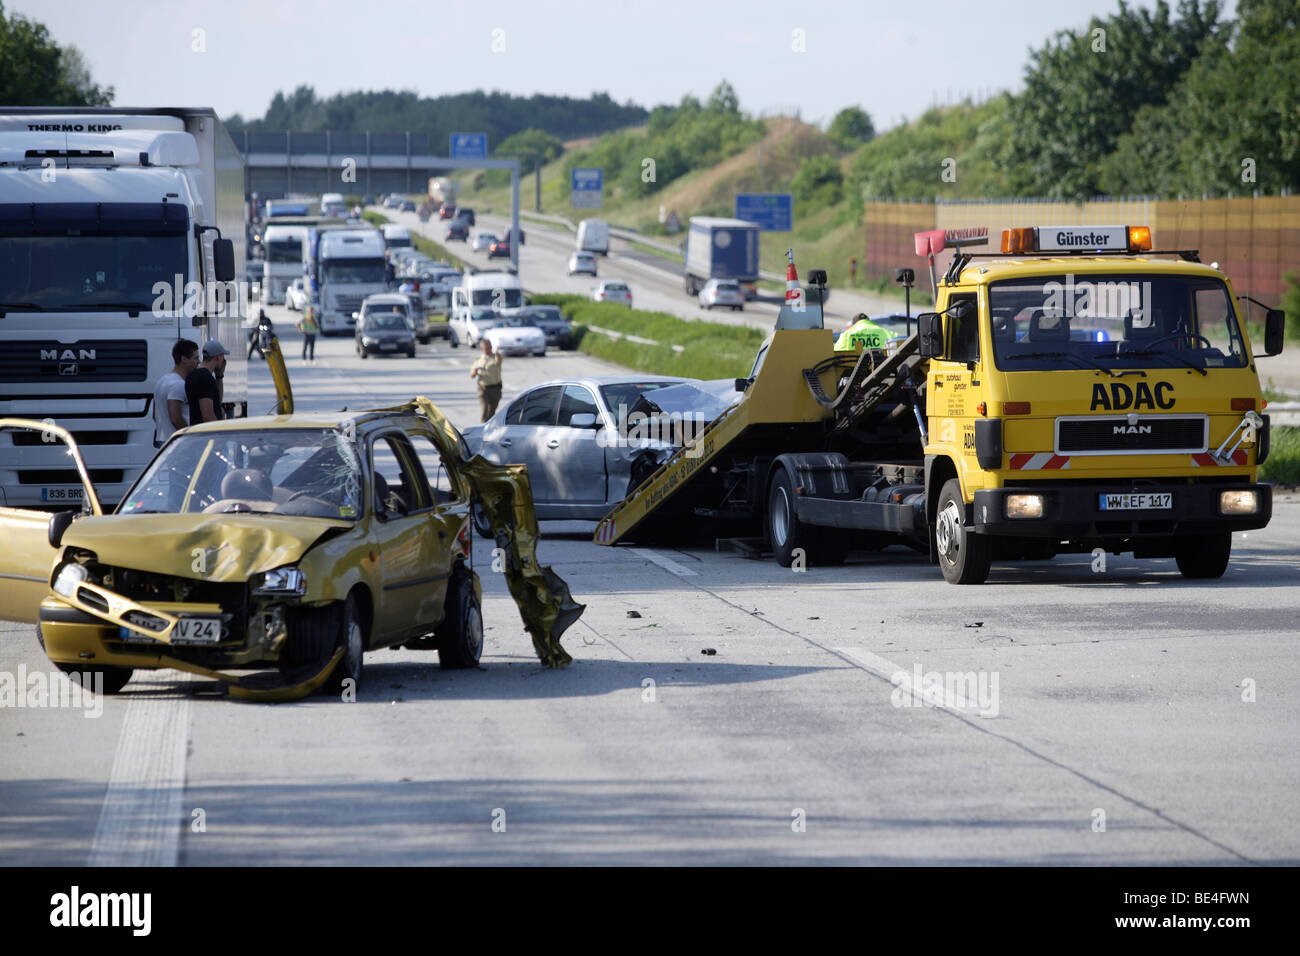 Servicio de remolque en acción después de un accidente en la autopista 3, cerca de la autopista Dernbach, Renania-Palatinado, Alemania, Europa Foto de stock